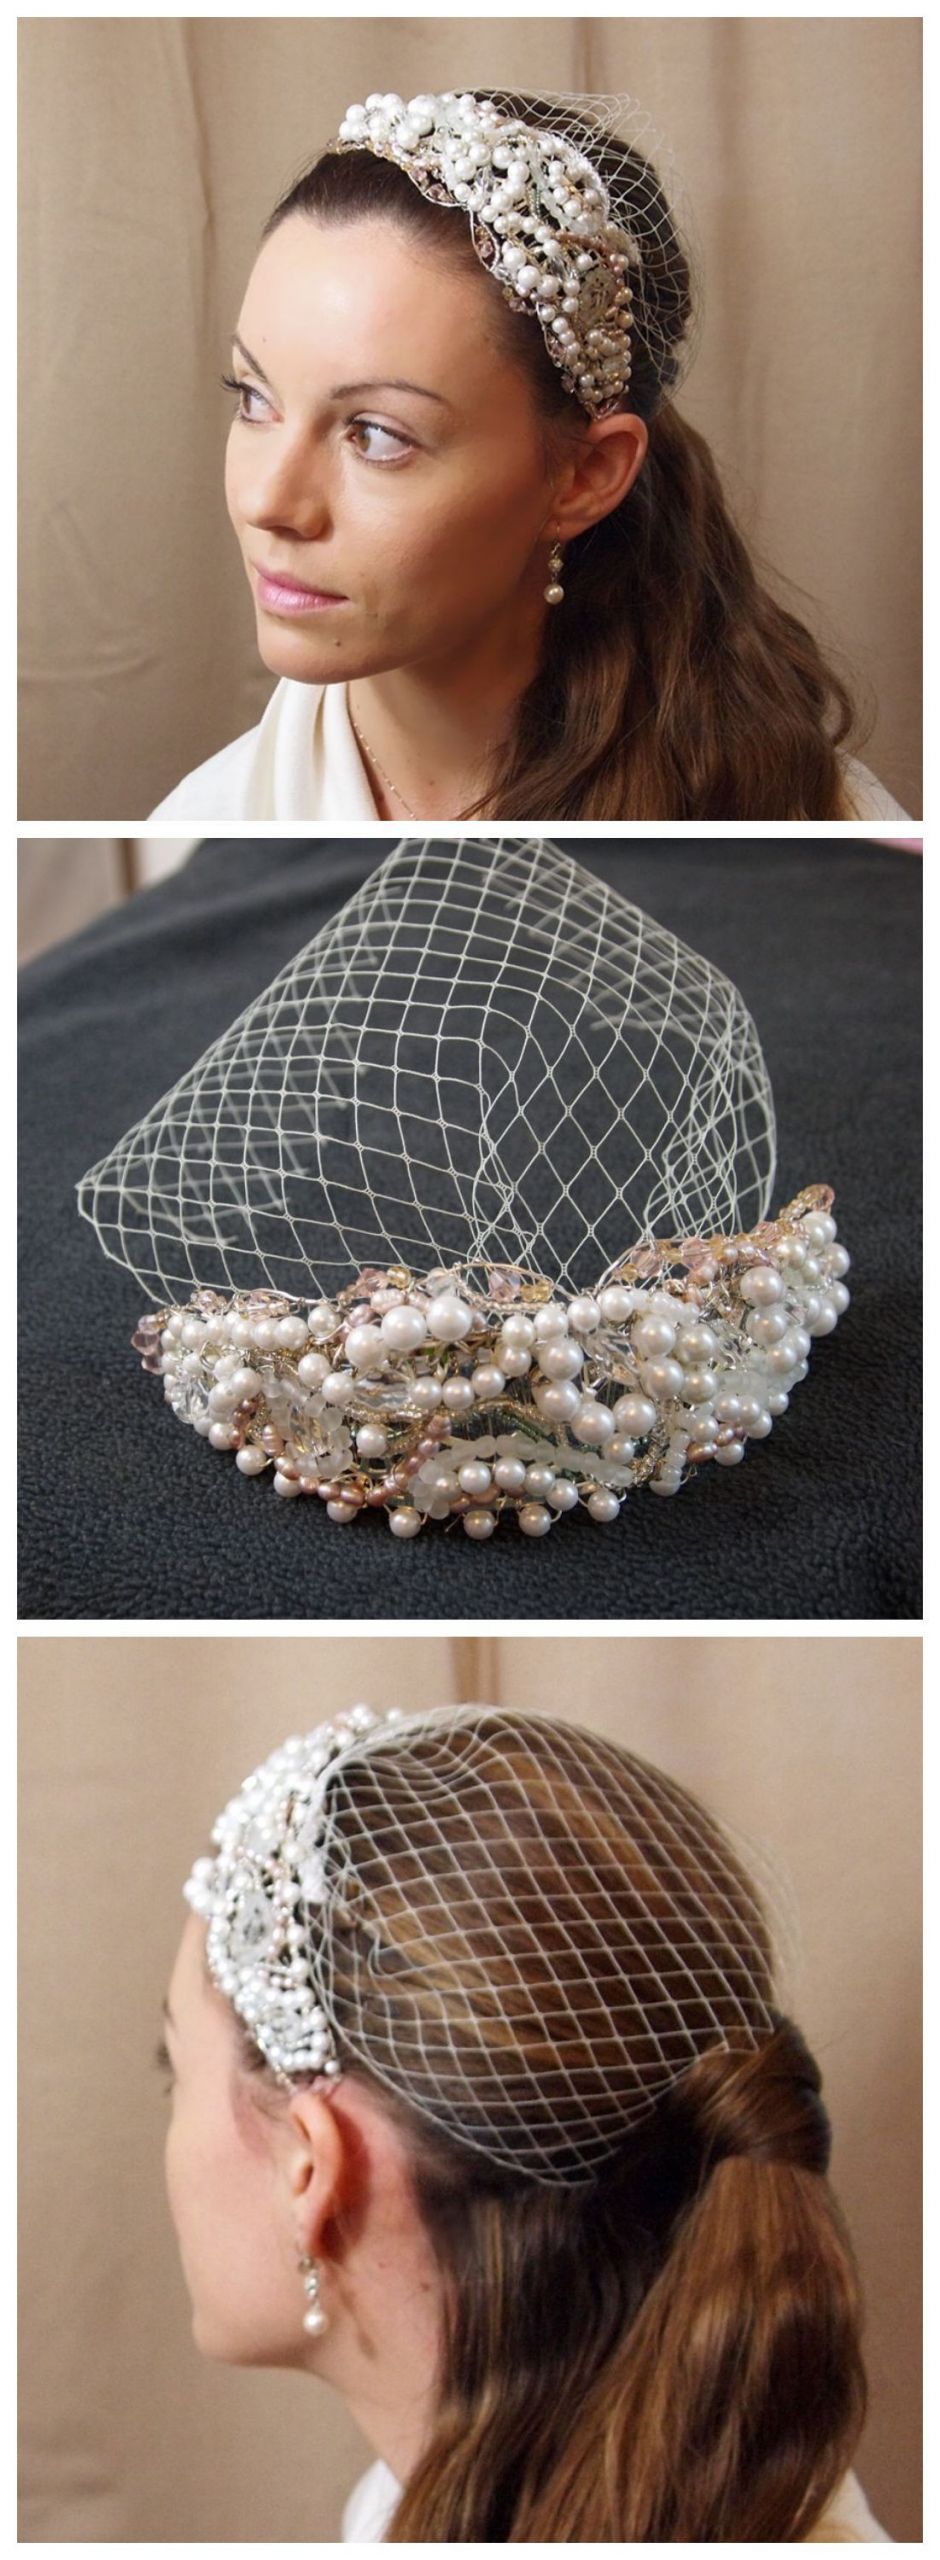 DIY Wedding Headpiece
 Unique DIY Beautiful HeadPiece & Small Veil